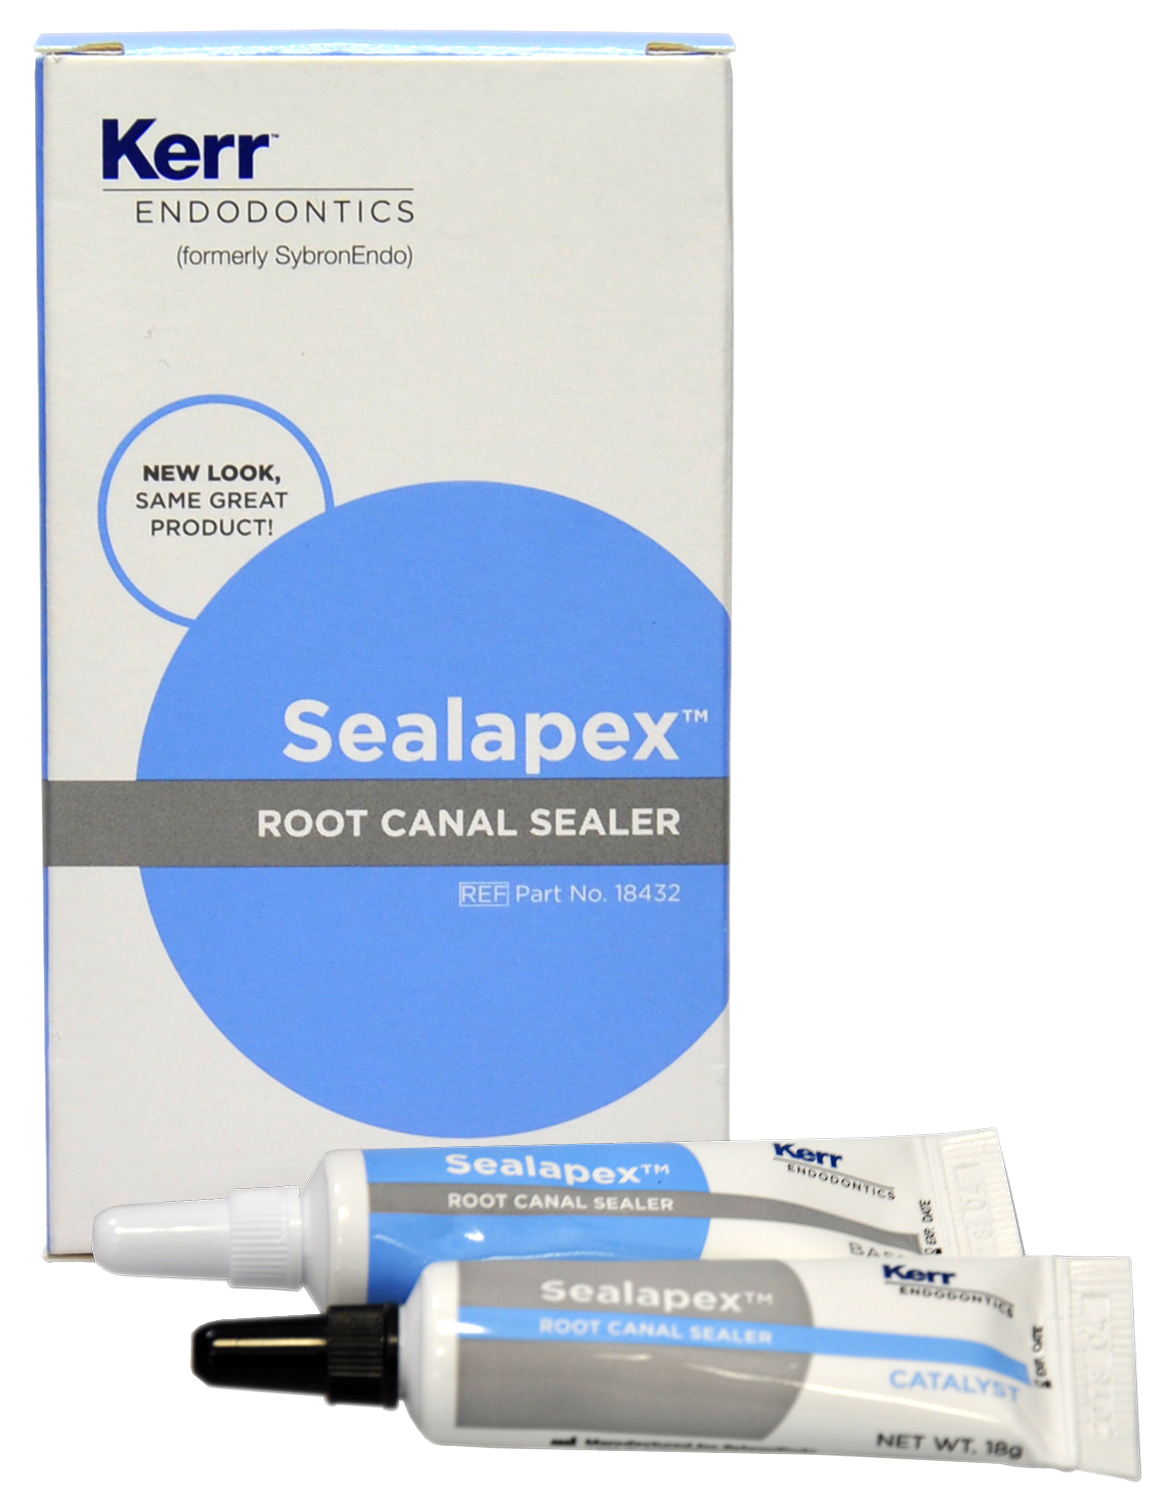 Силер Sealapex™ (база 12 г+ катализатор 18 г) Kerr 18432